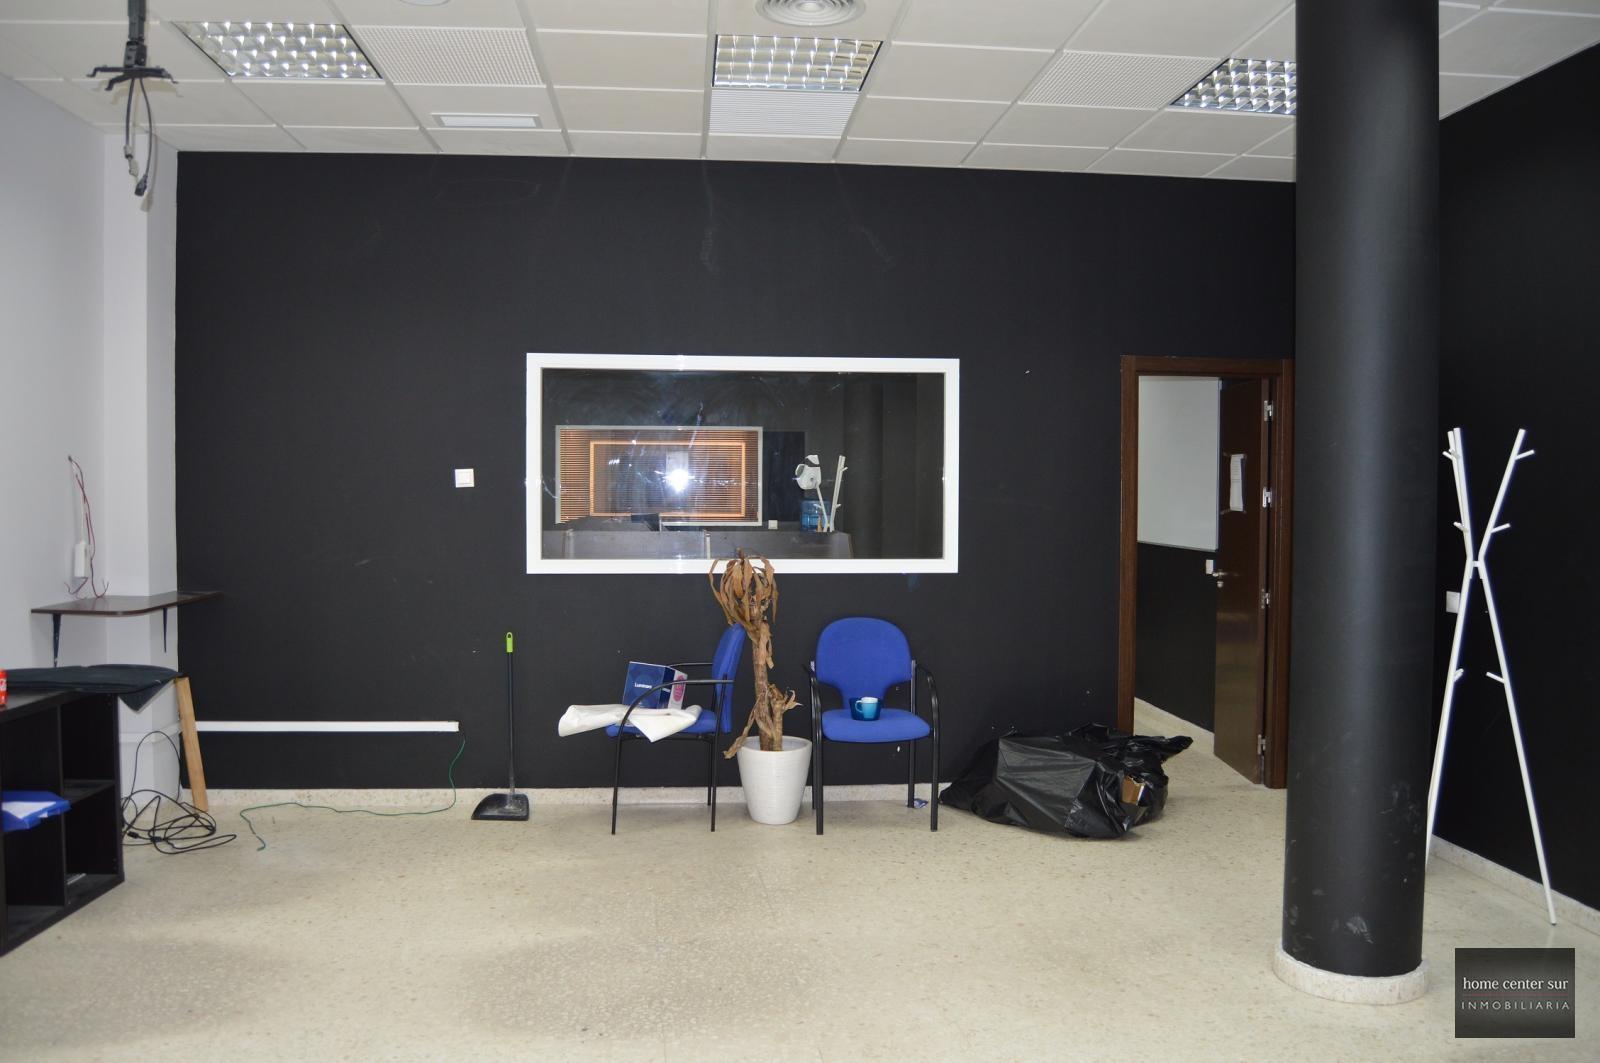 Office for rent in Avenida de Mijas (Fuengirola), 4.950 €/month